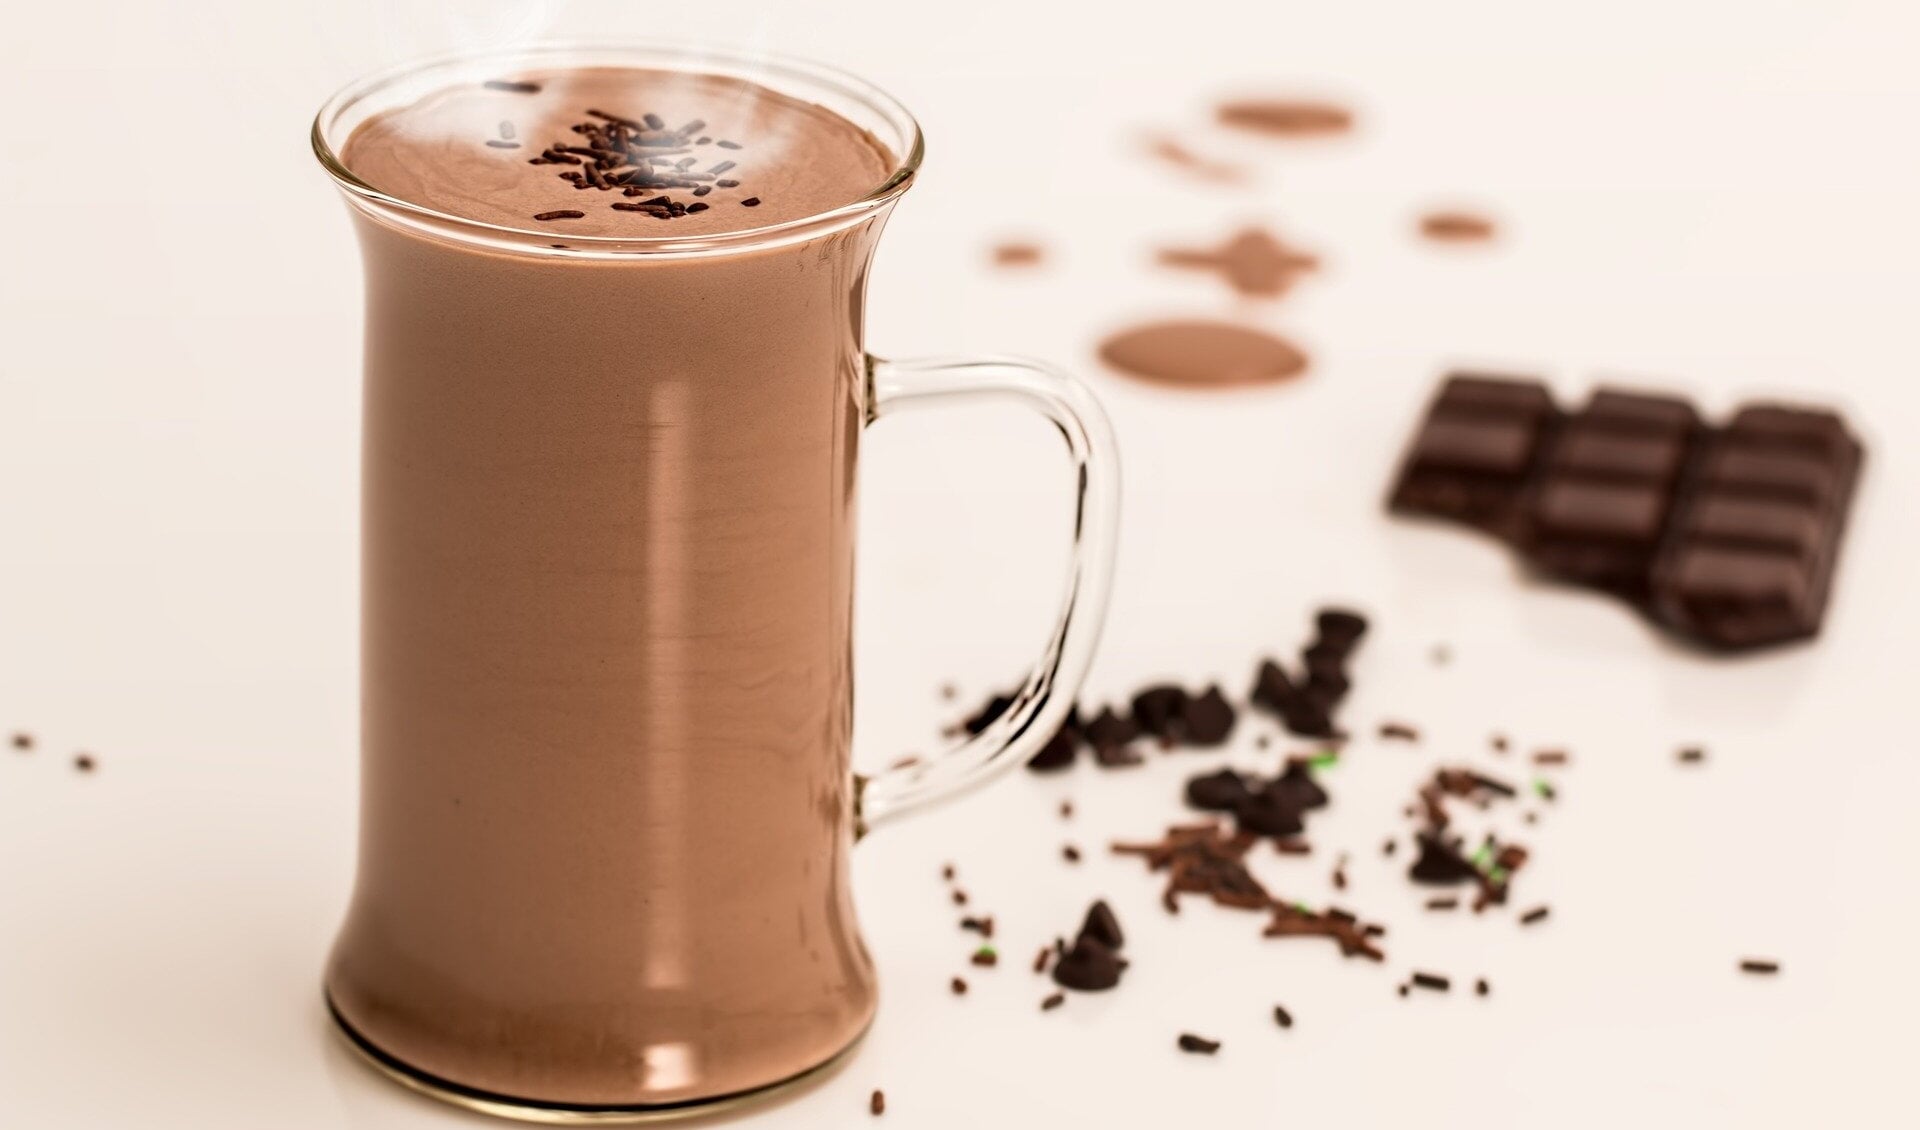 Ergens warme chocolademelk drinken doorbreekt eenzame dagen thuis.